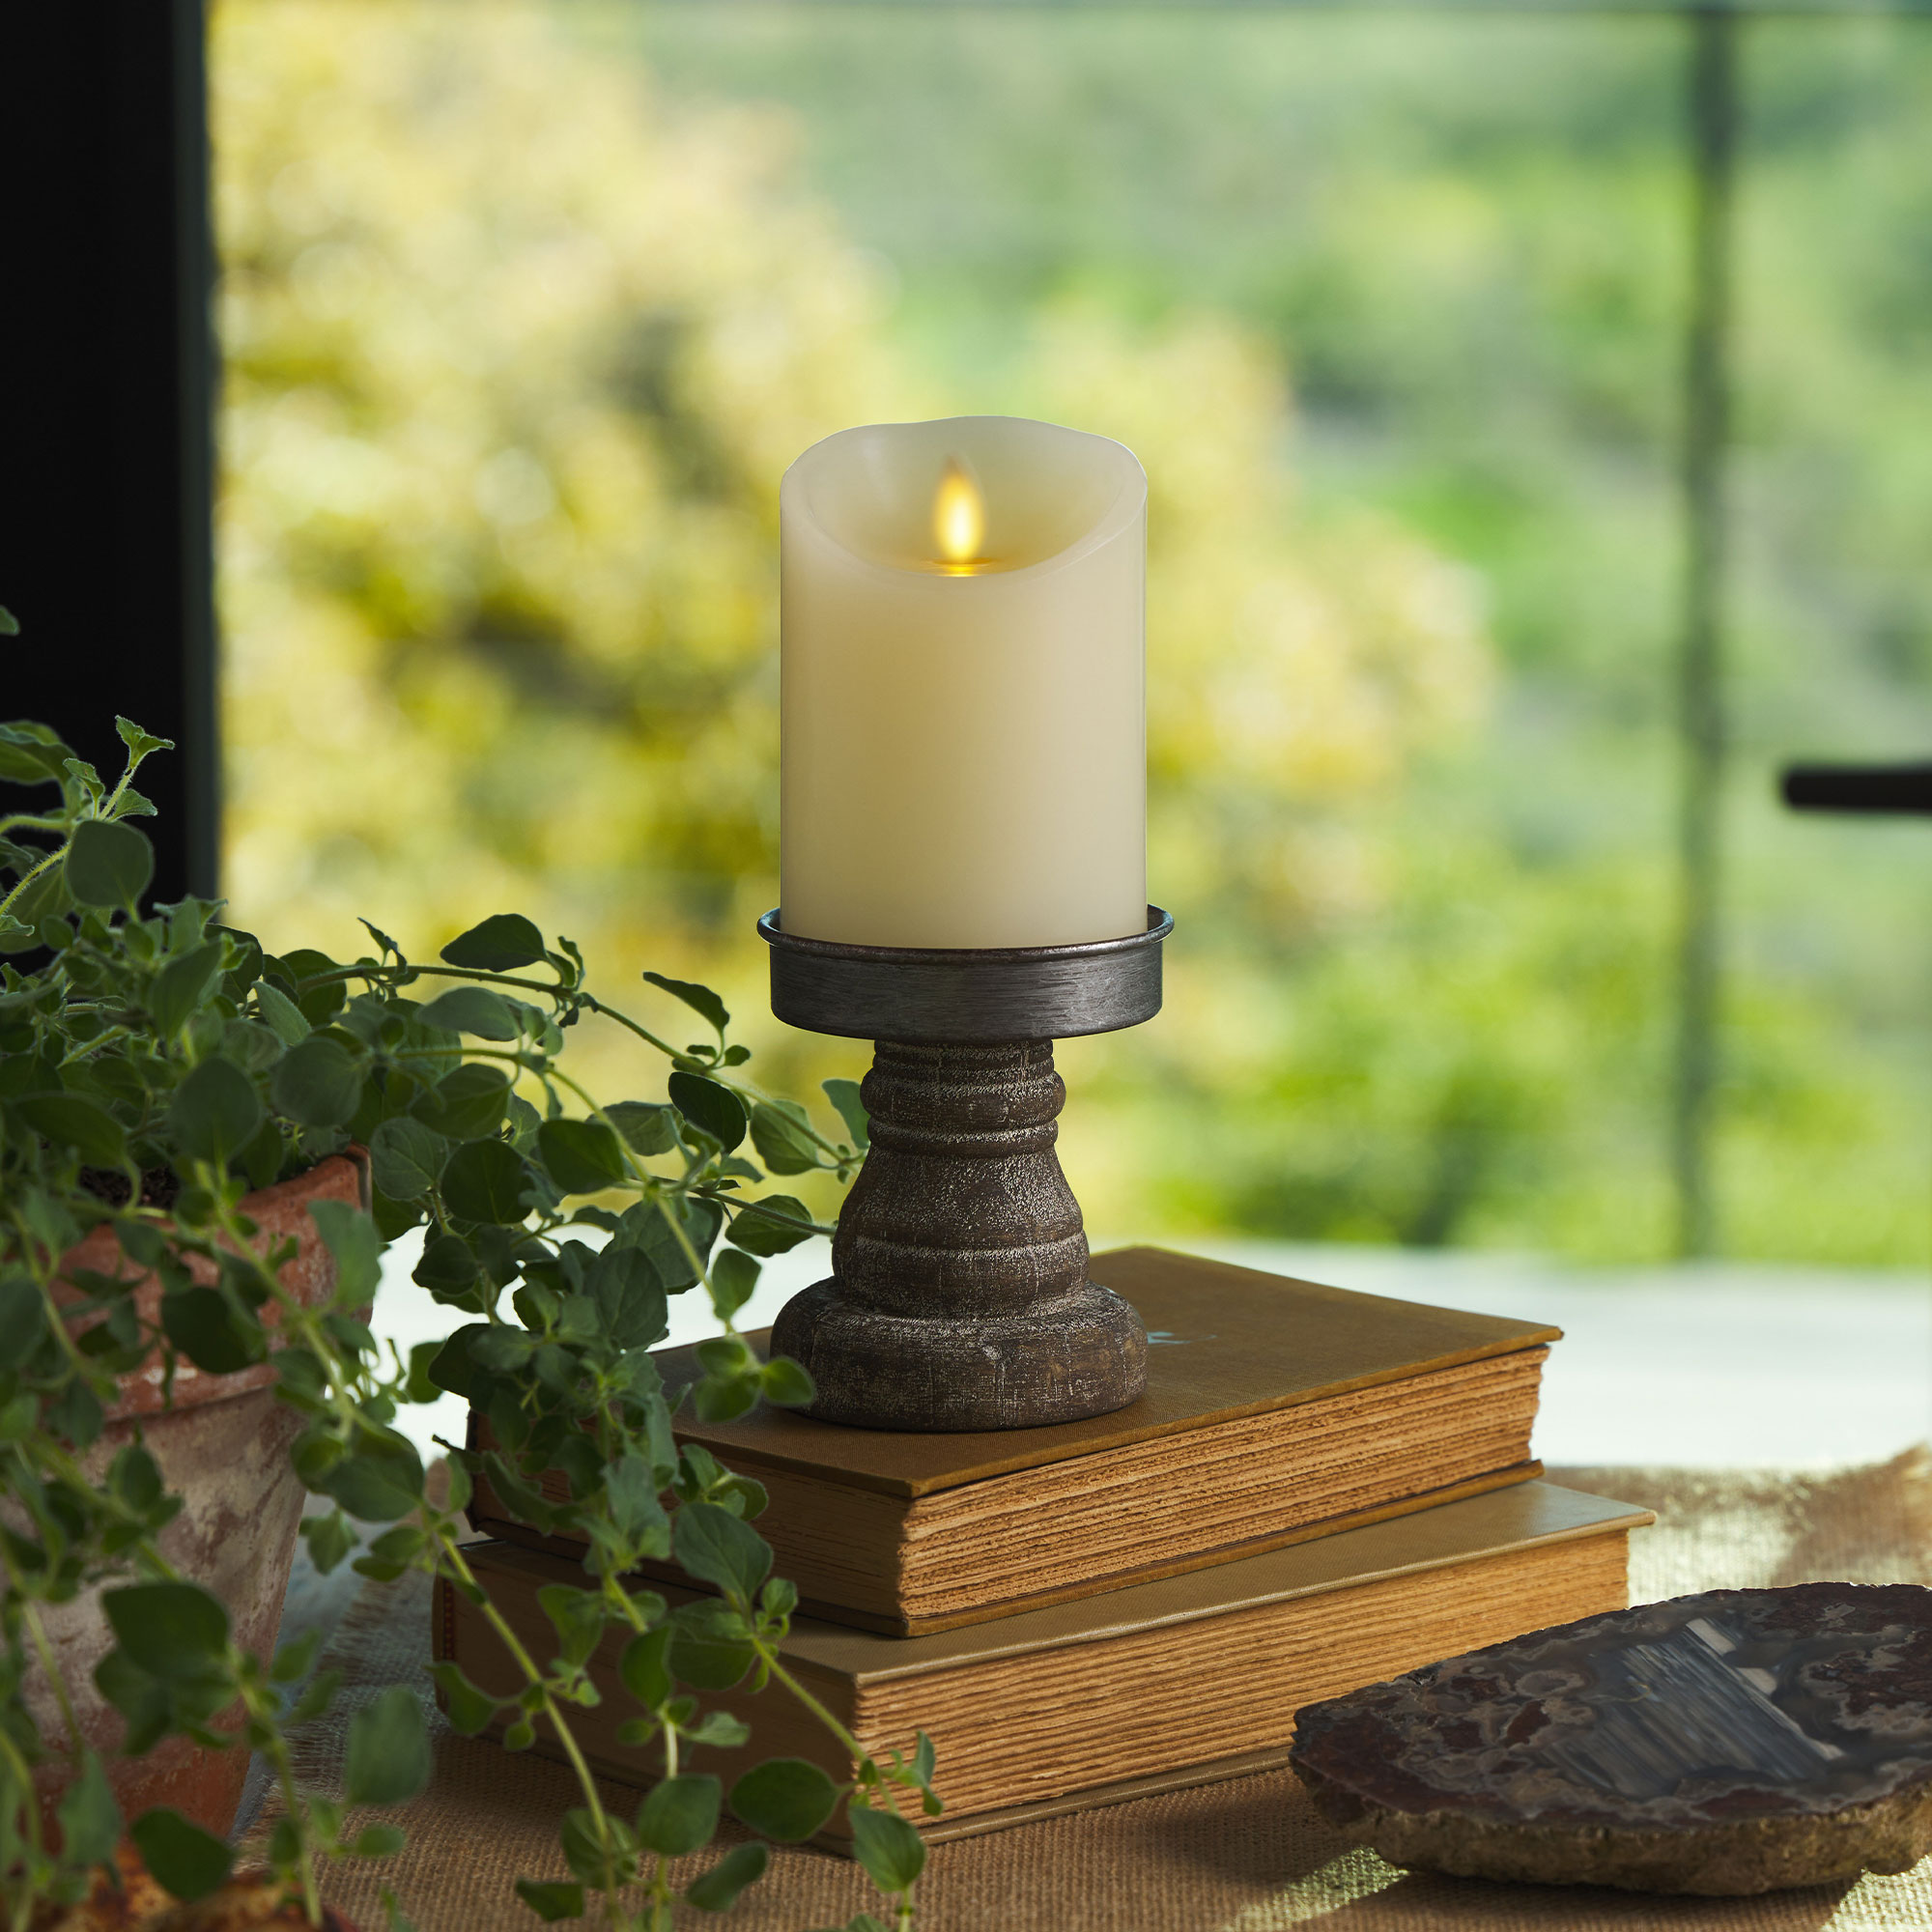 Luminara - Flameless LED Candle - Glass Mason Jar With Lid - Ivory